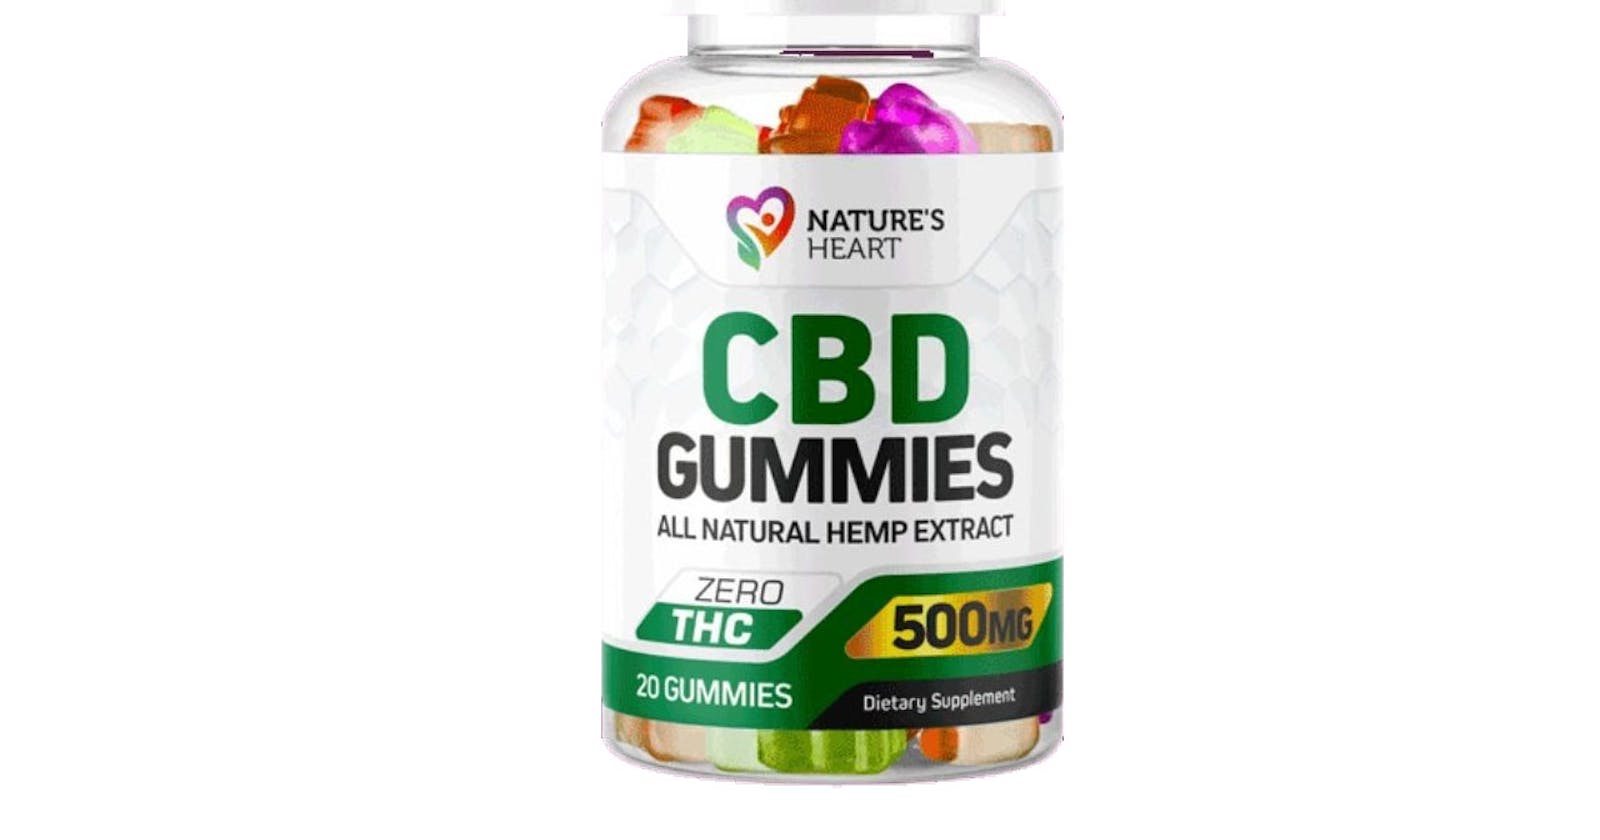 Nature's Heart CBD Gummies Official Website Reviews